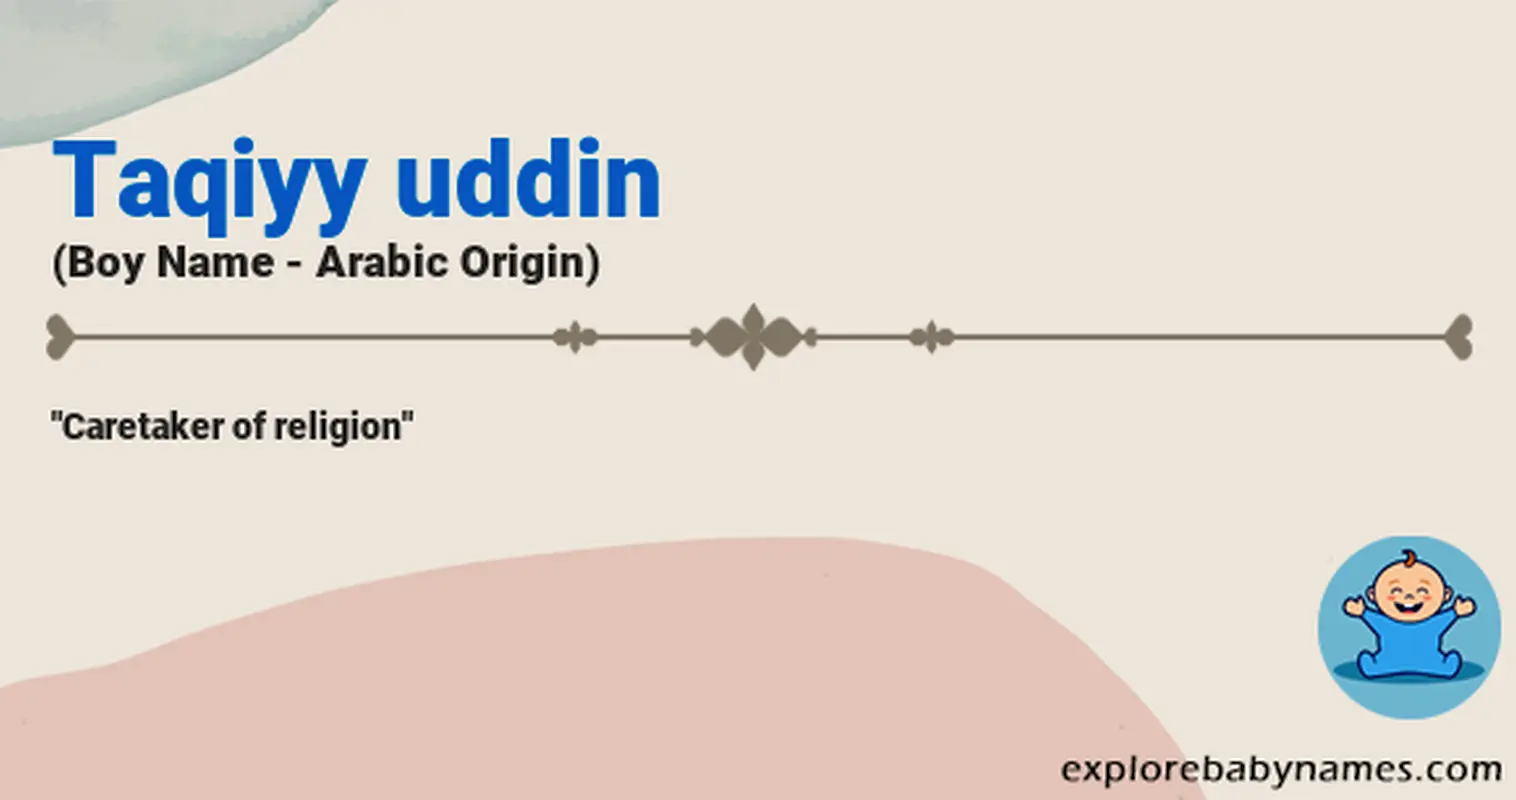 Meaning of Taqiyy uddin